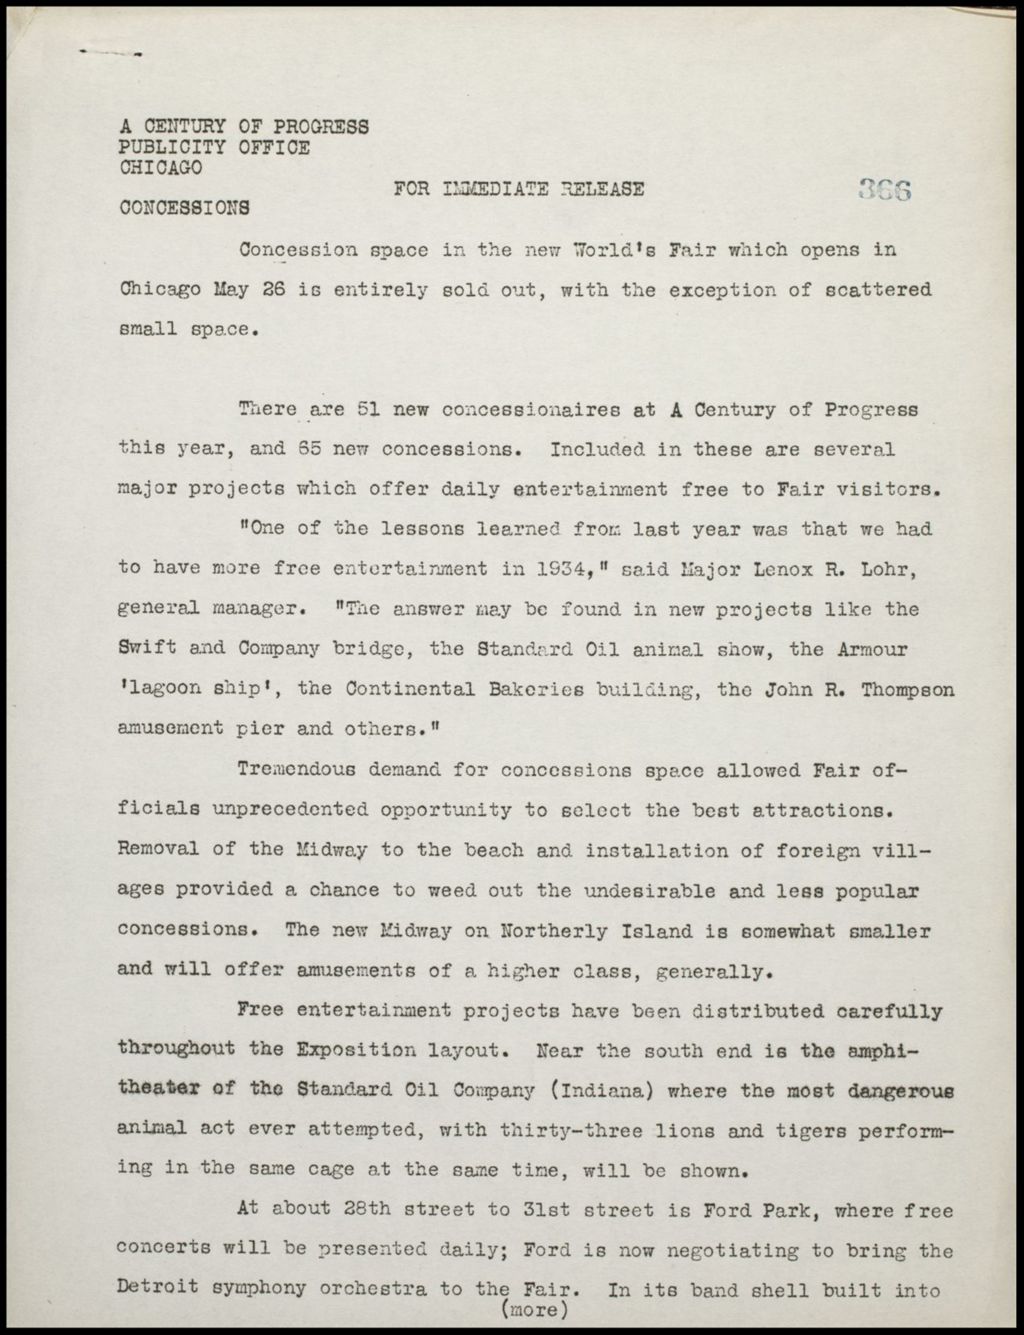 Concessions - General Remarks, 1934 (Folder 14-171)